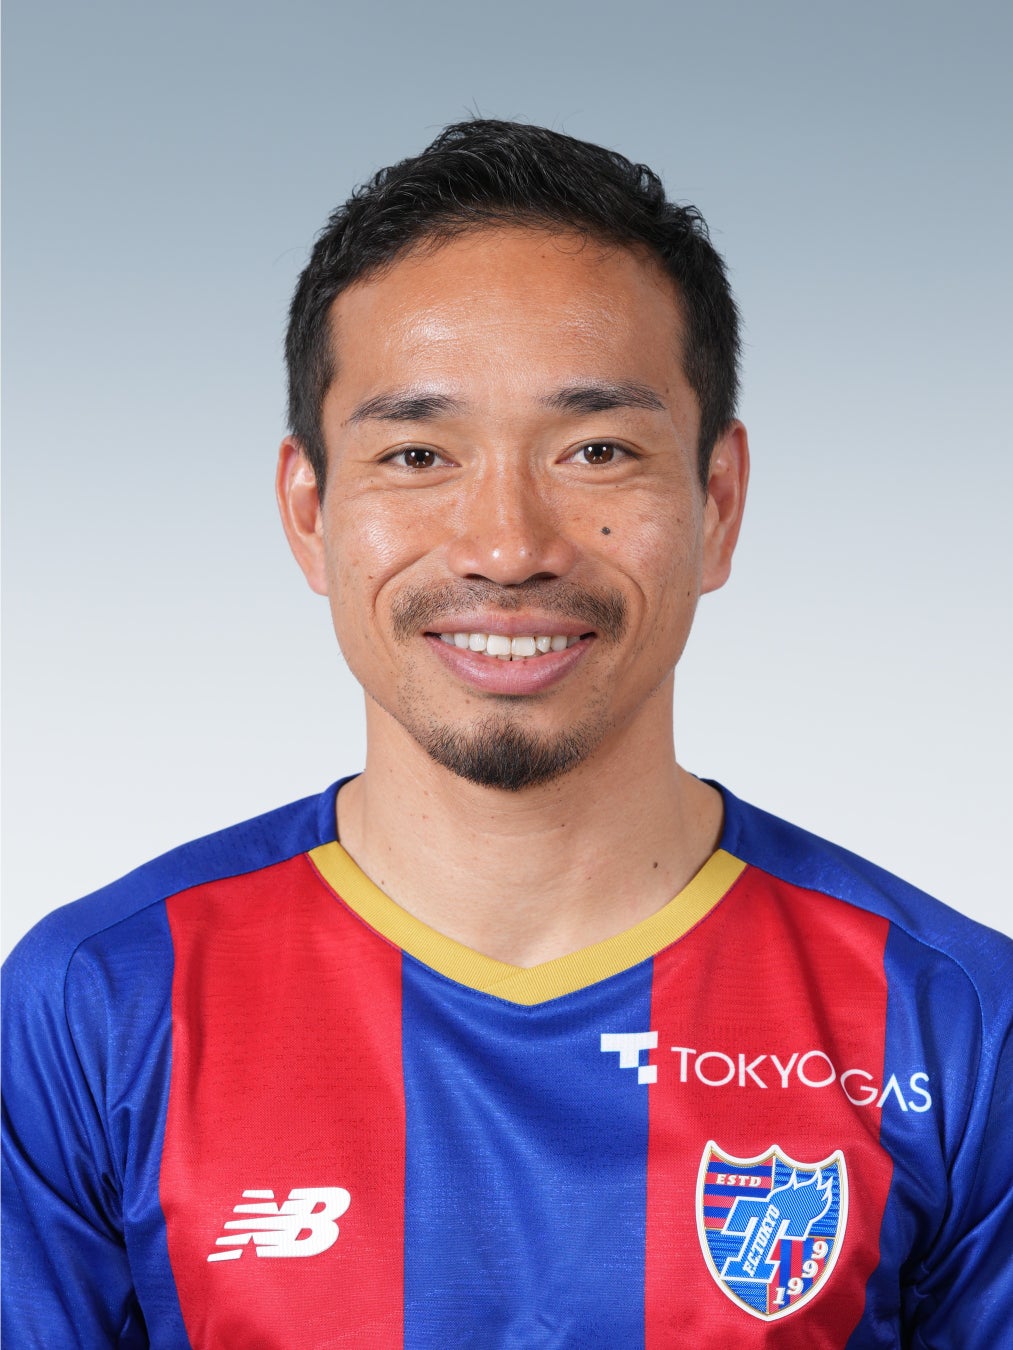 権田 修一選手FIFA ワールドカップカタール2022™サッカー日本代表メンバー選出のお知らせ